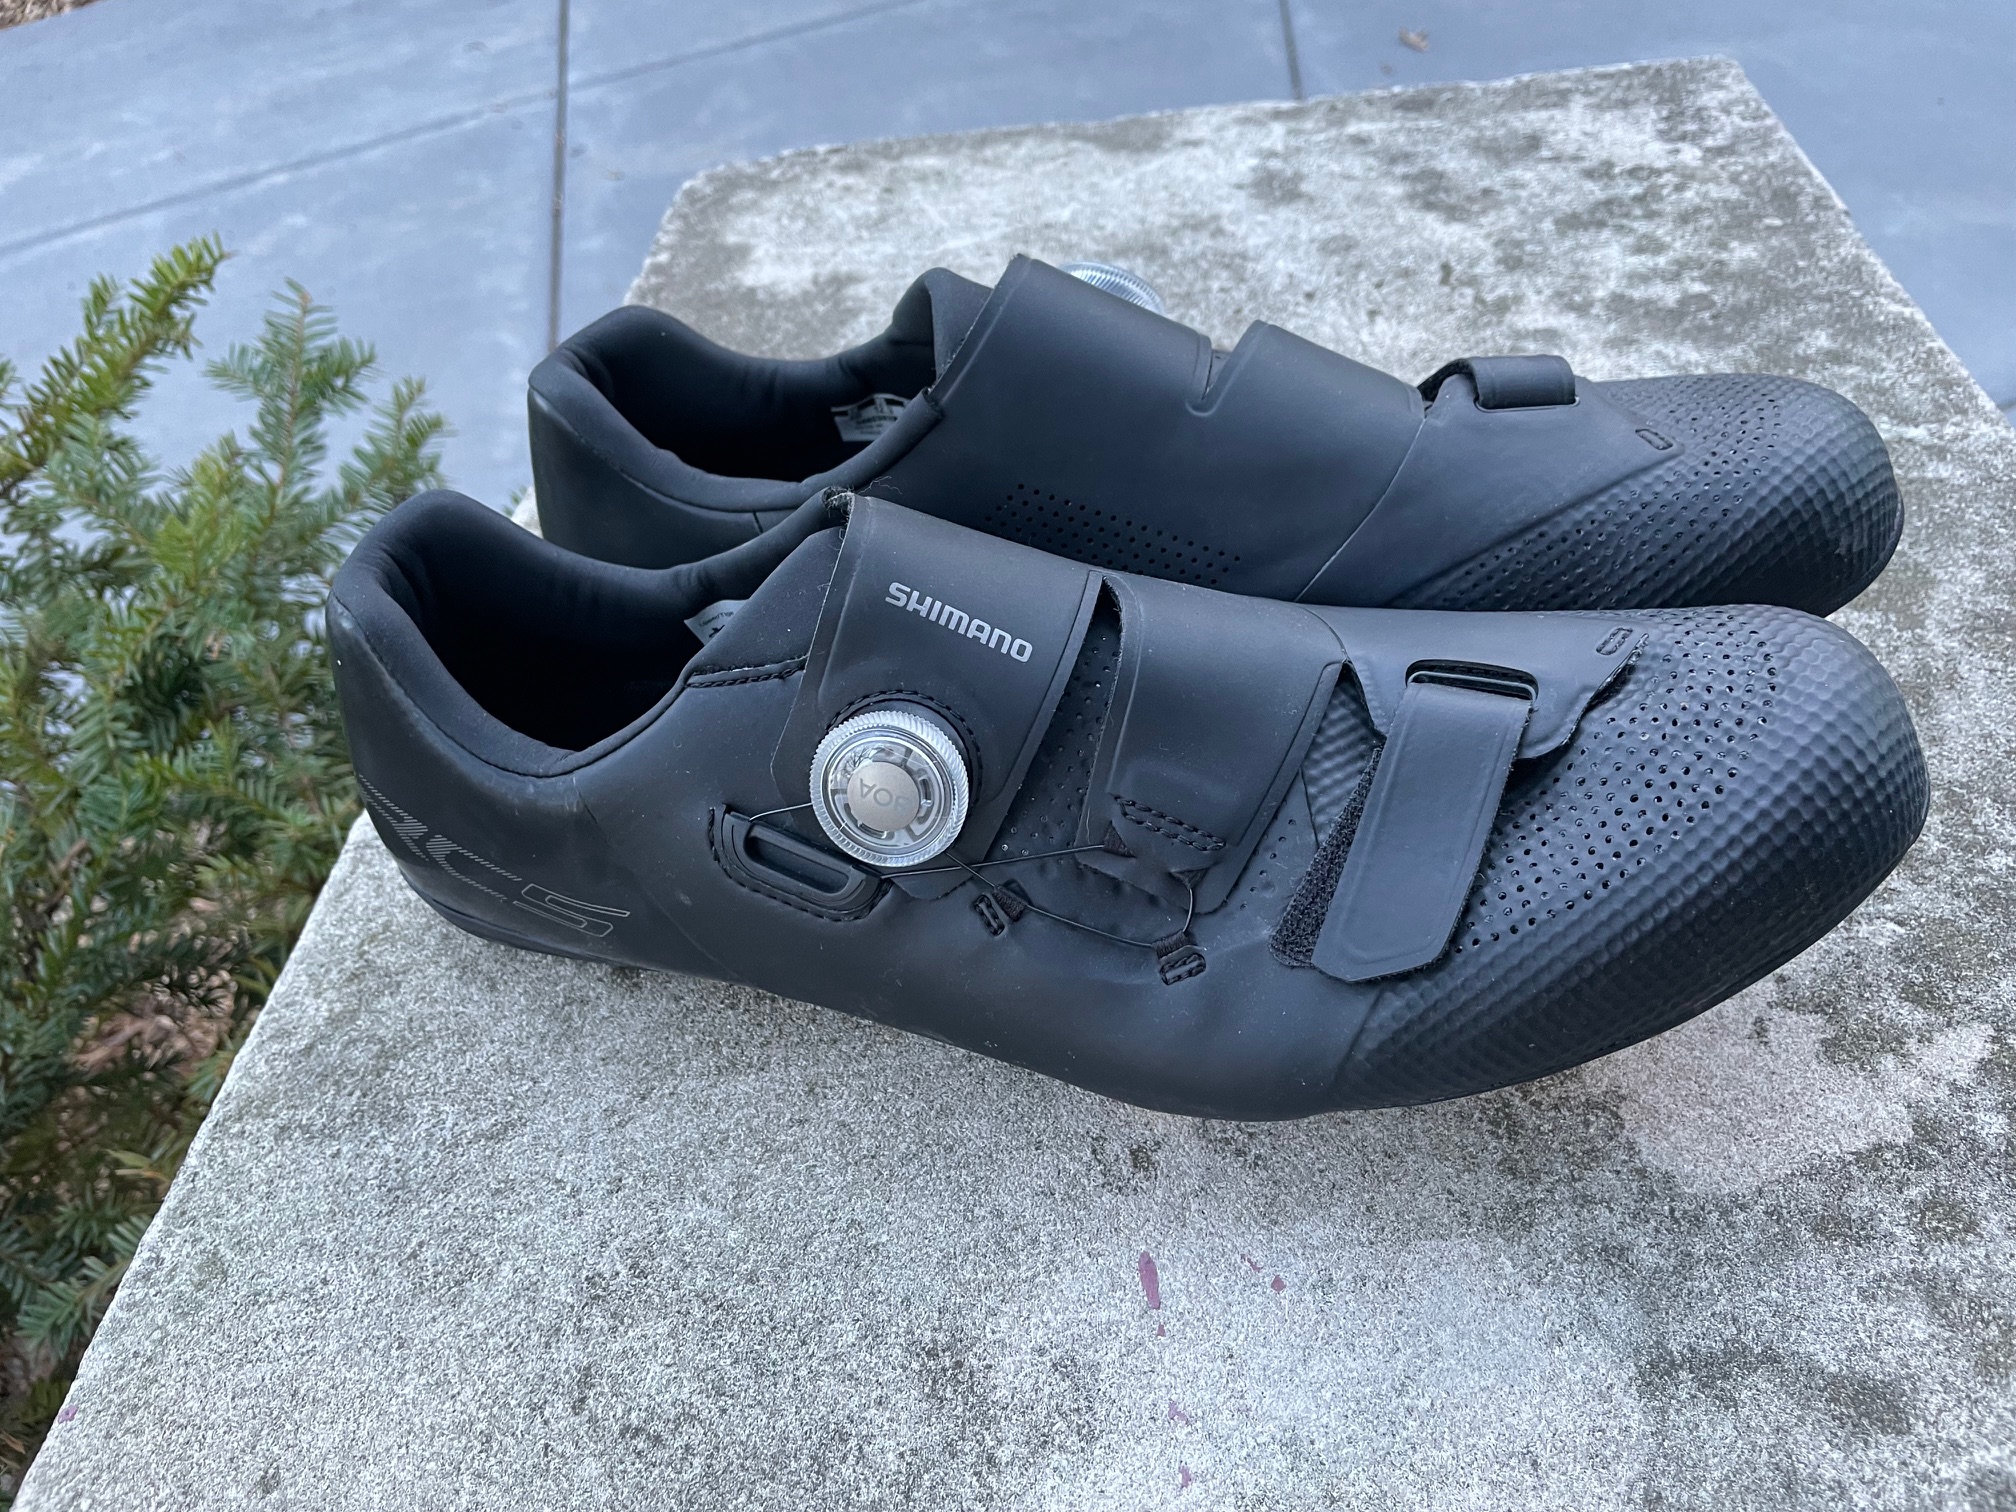 Shimano RC5 shoes (size 48E)